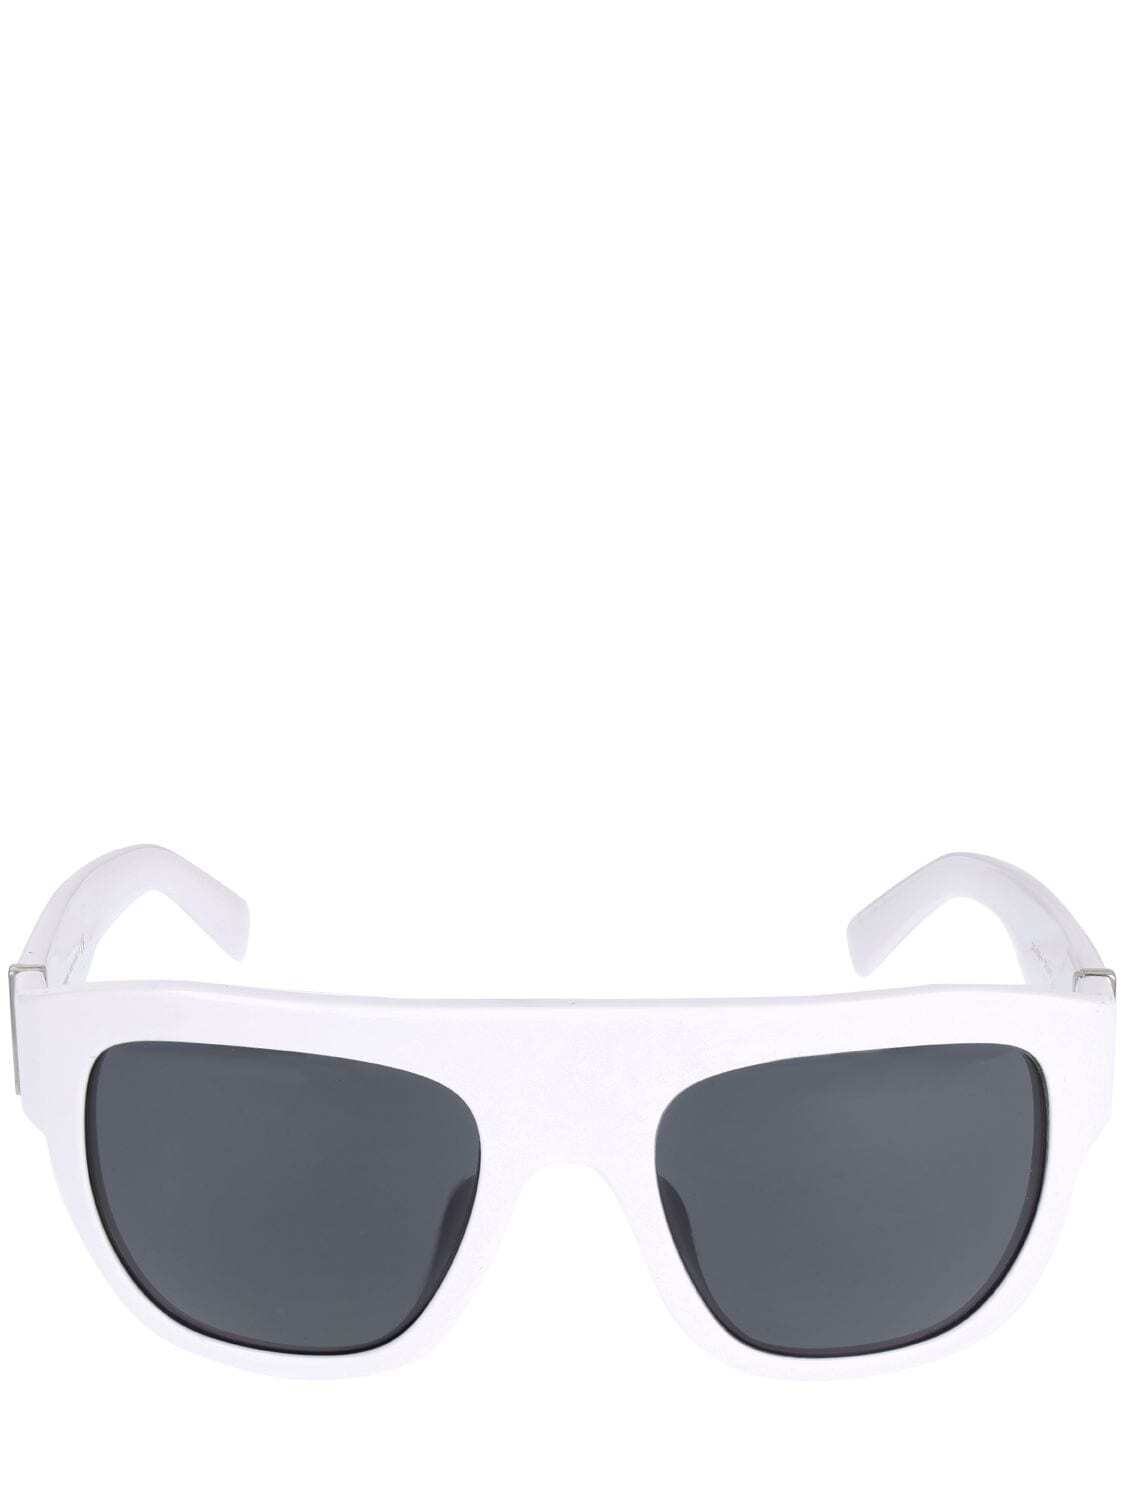 DOLCE & GABBANA Tradizione Squared Acetate Sunglasses in black / white